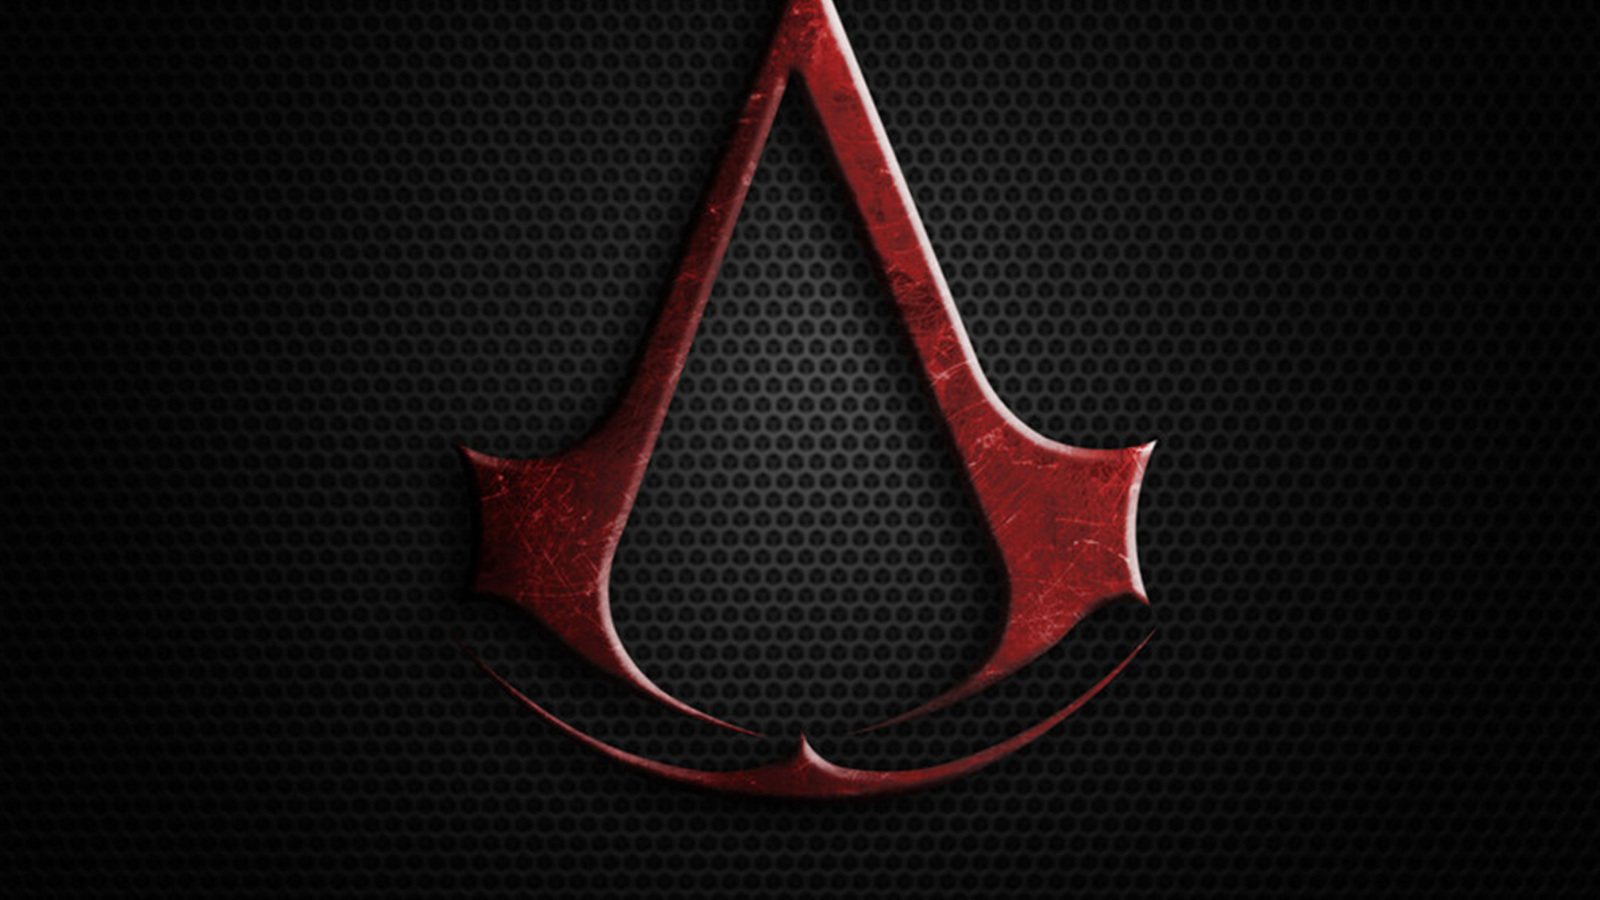 Assassins Creed screenshot #1 1600x900